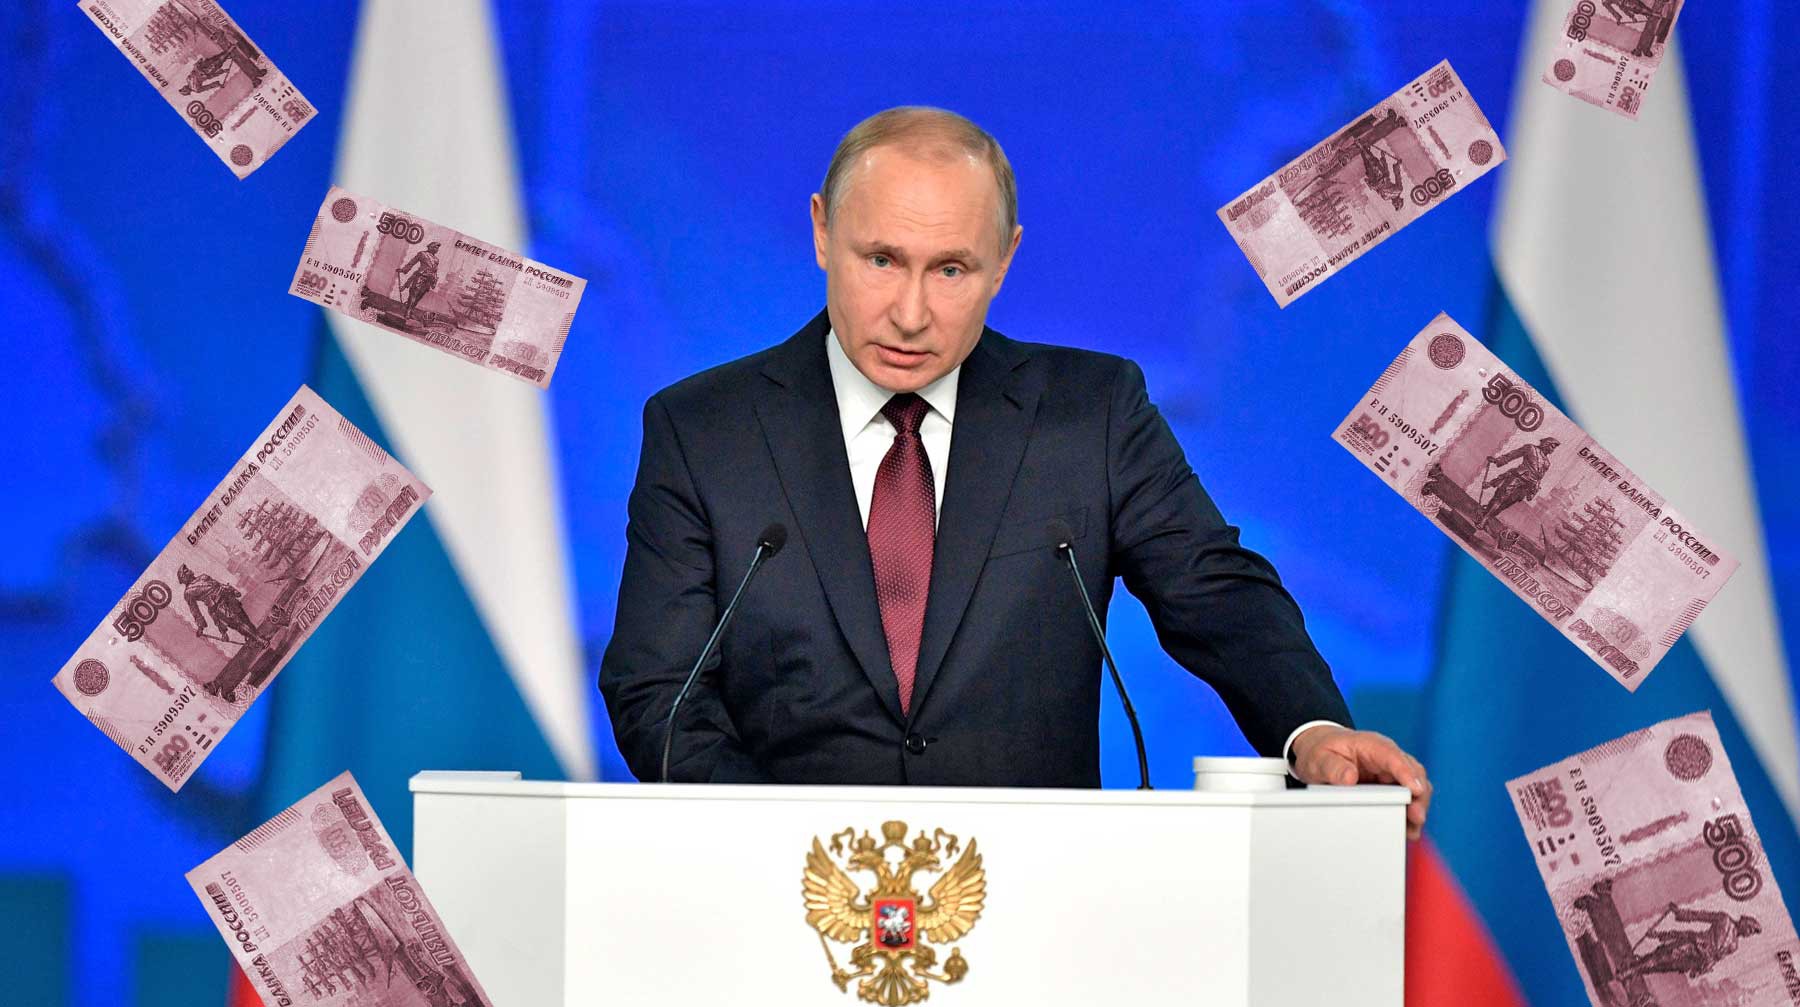 Dailystorm - «Банки выдержат». Путин нацелил правительство на рост экономики и борьбу с бедностью, но есть ли деньги?